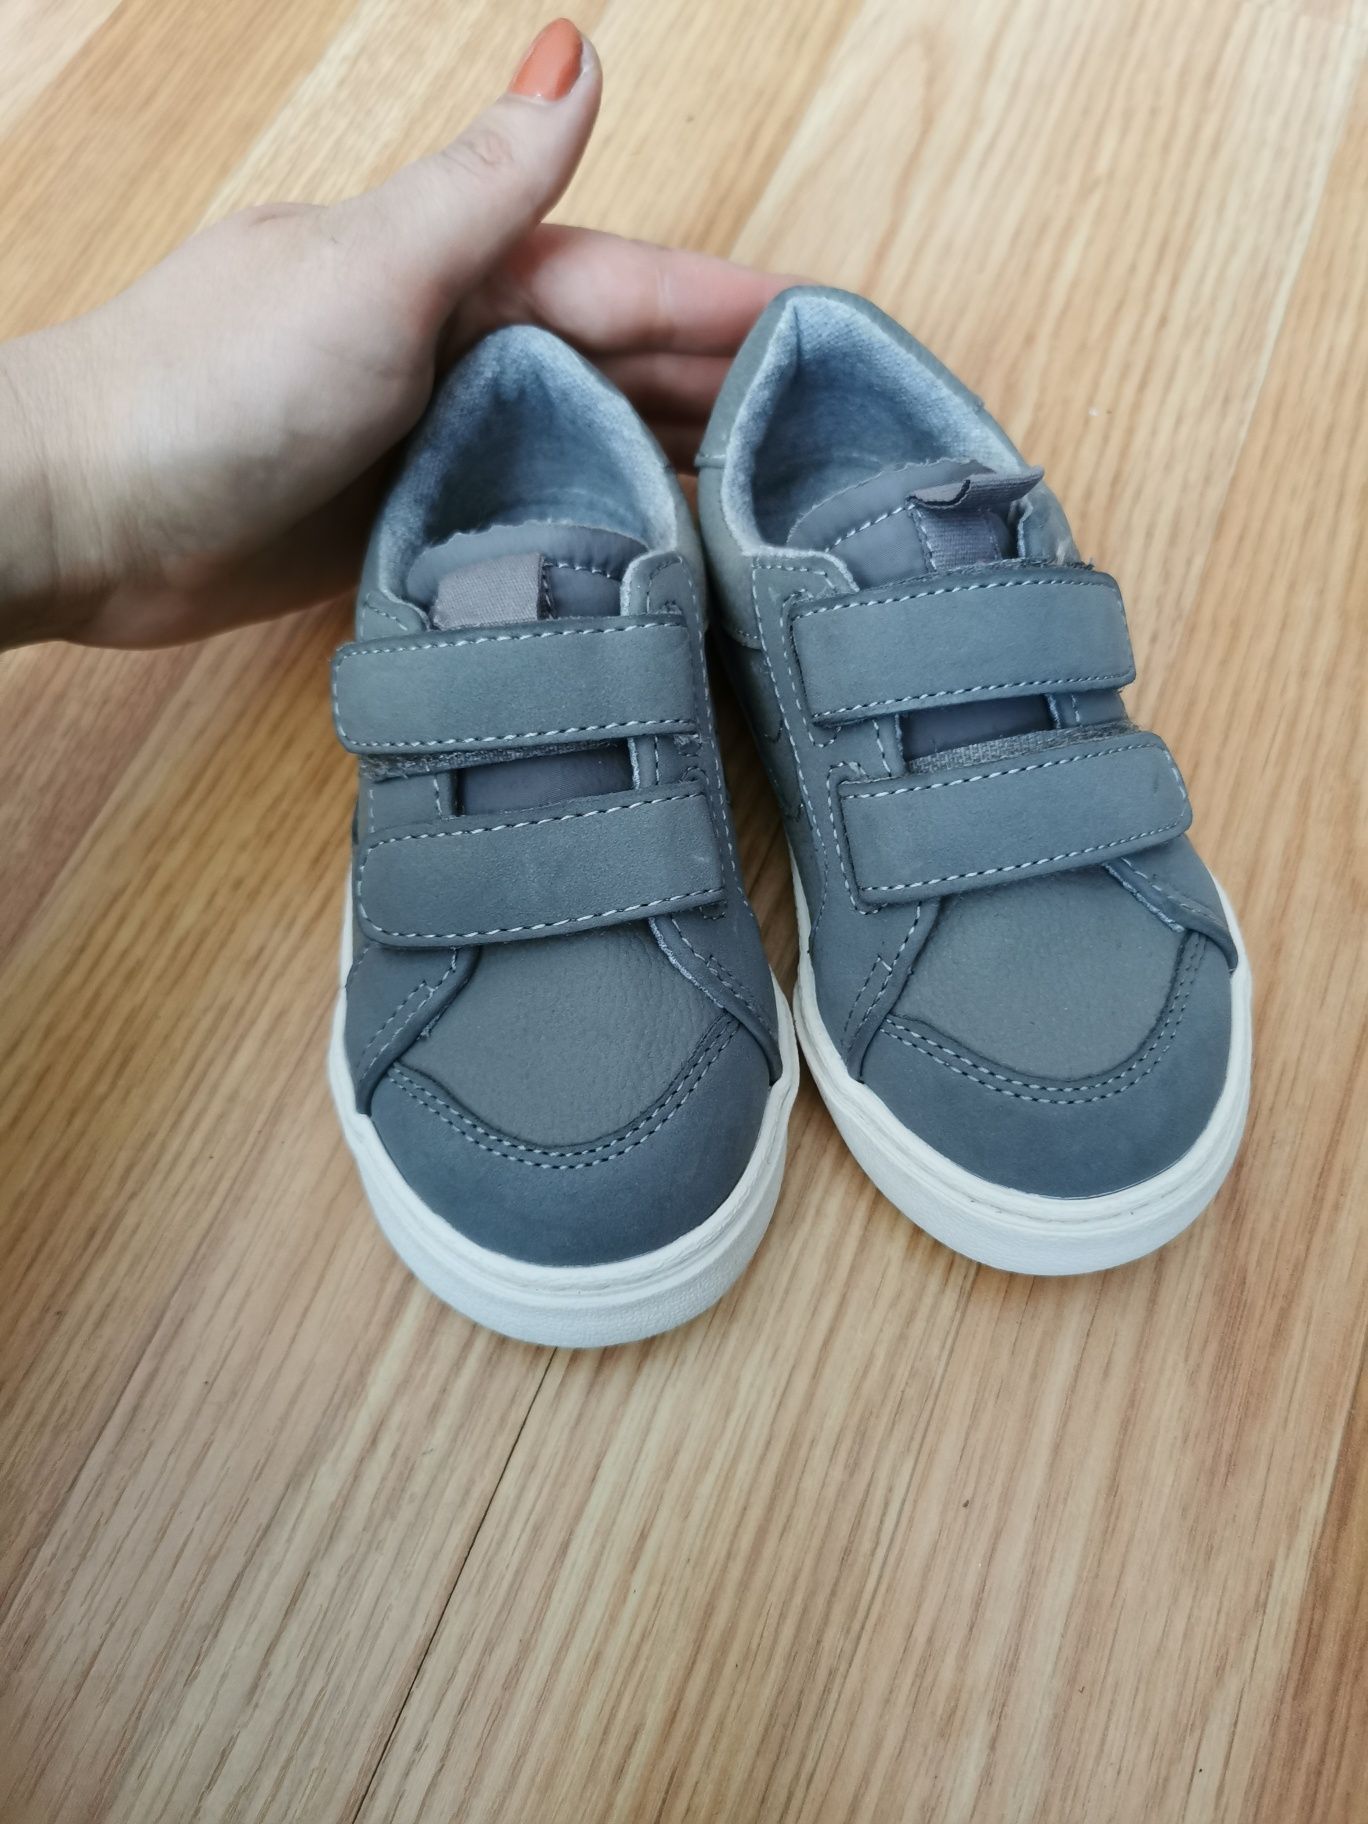 Sneakers / papuci /pantofi pentru copii Zara Kids băieți, mărimea 24